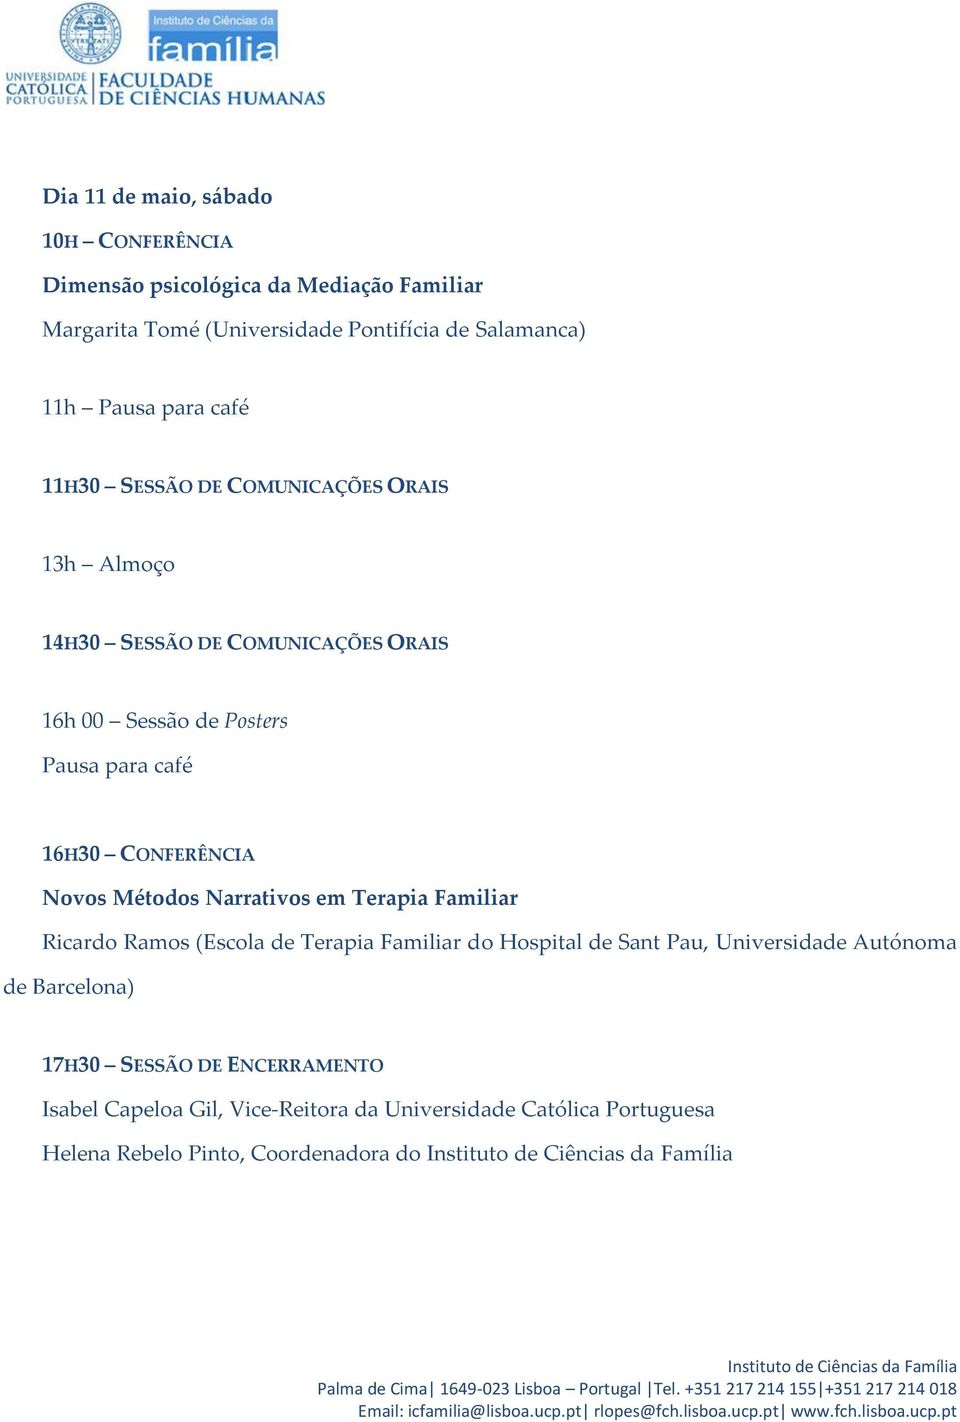 CONFERÊNCIA Novos Métodos Narrativos em Terapia Familiar Ricardo Ramos (Escola de Terapia Familiar do Hospital de Sant Pau, Universidade